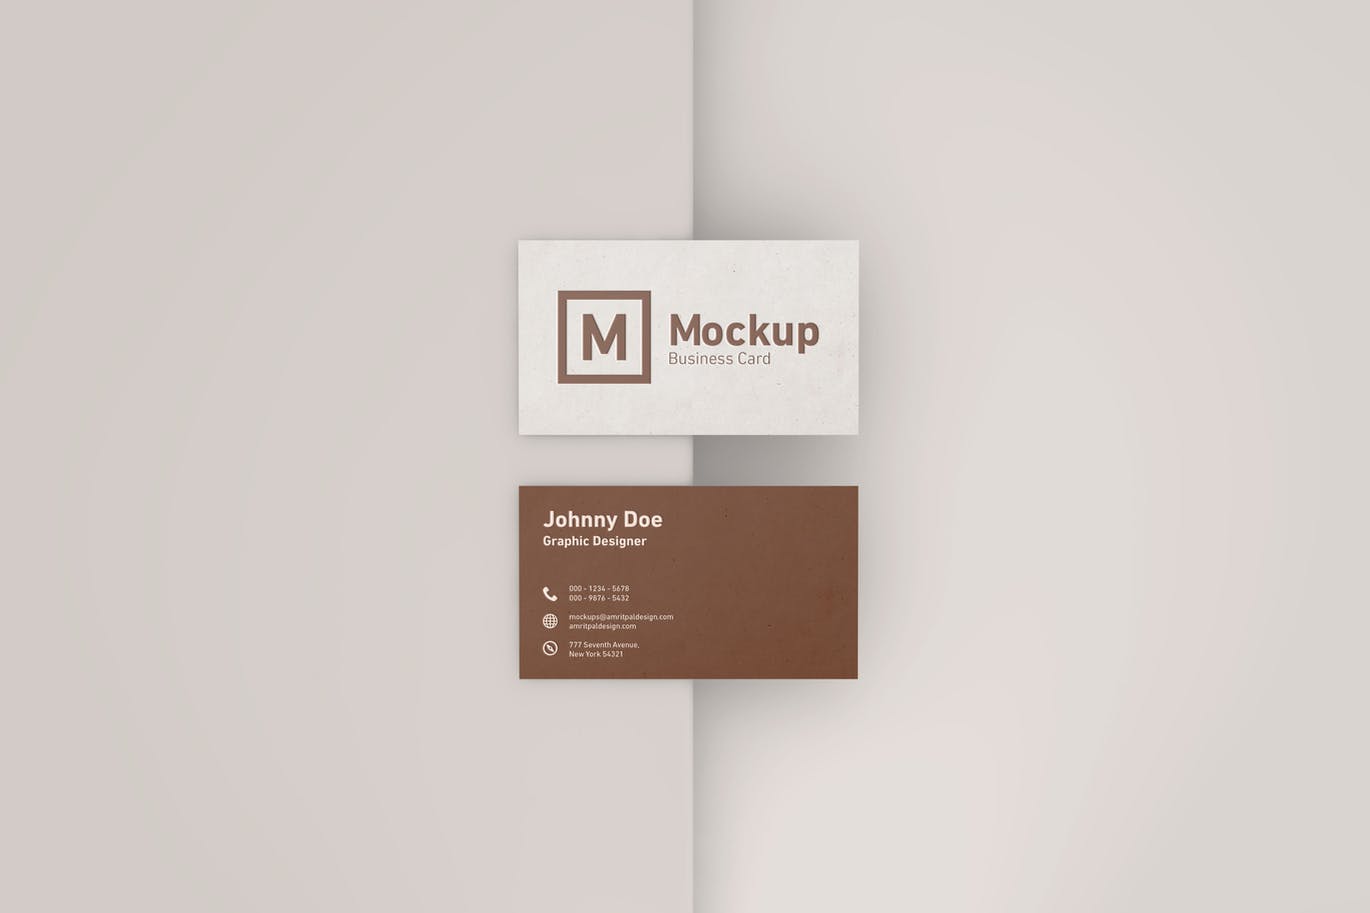 高端企业商务名片设计效果图样机模板 Elegant Business Card Mockup插图